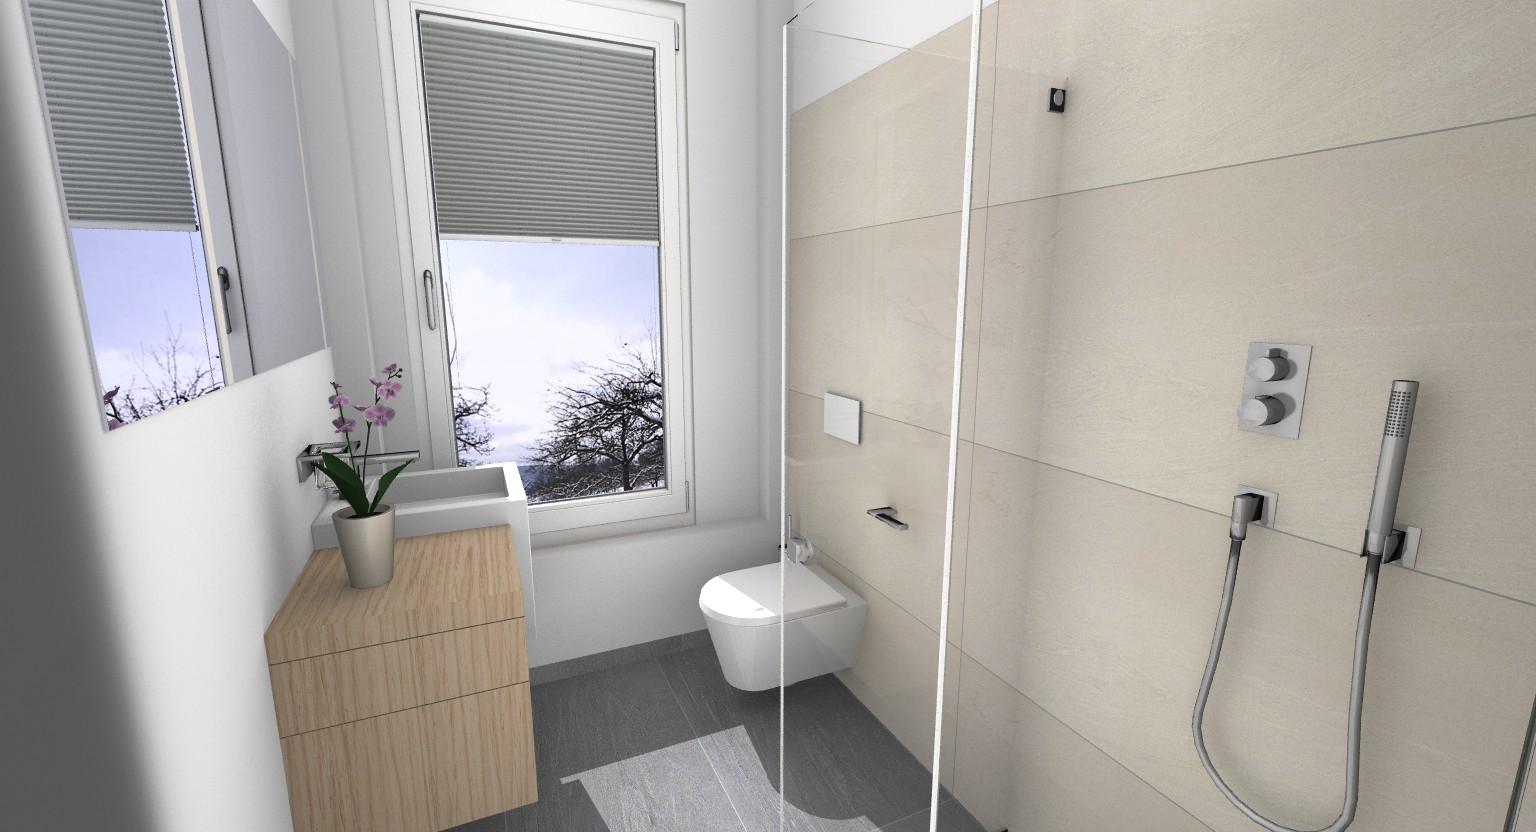 Vom Gäste-WC zum Duschbad #dusche ©Banovo GmbH